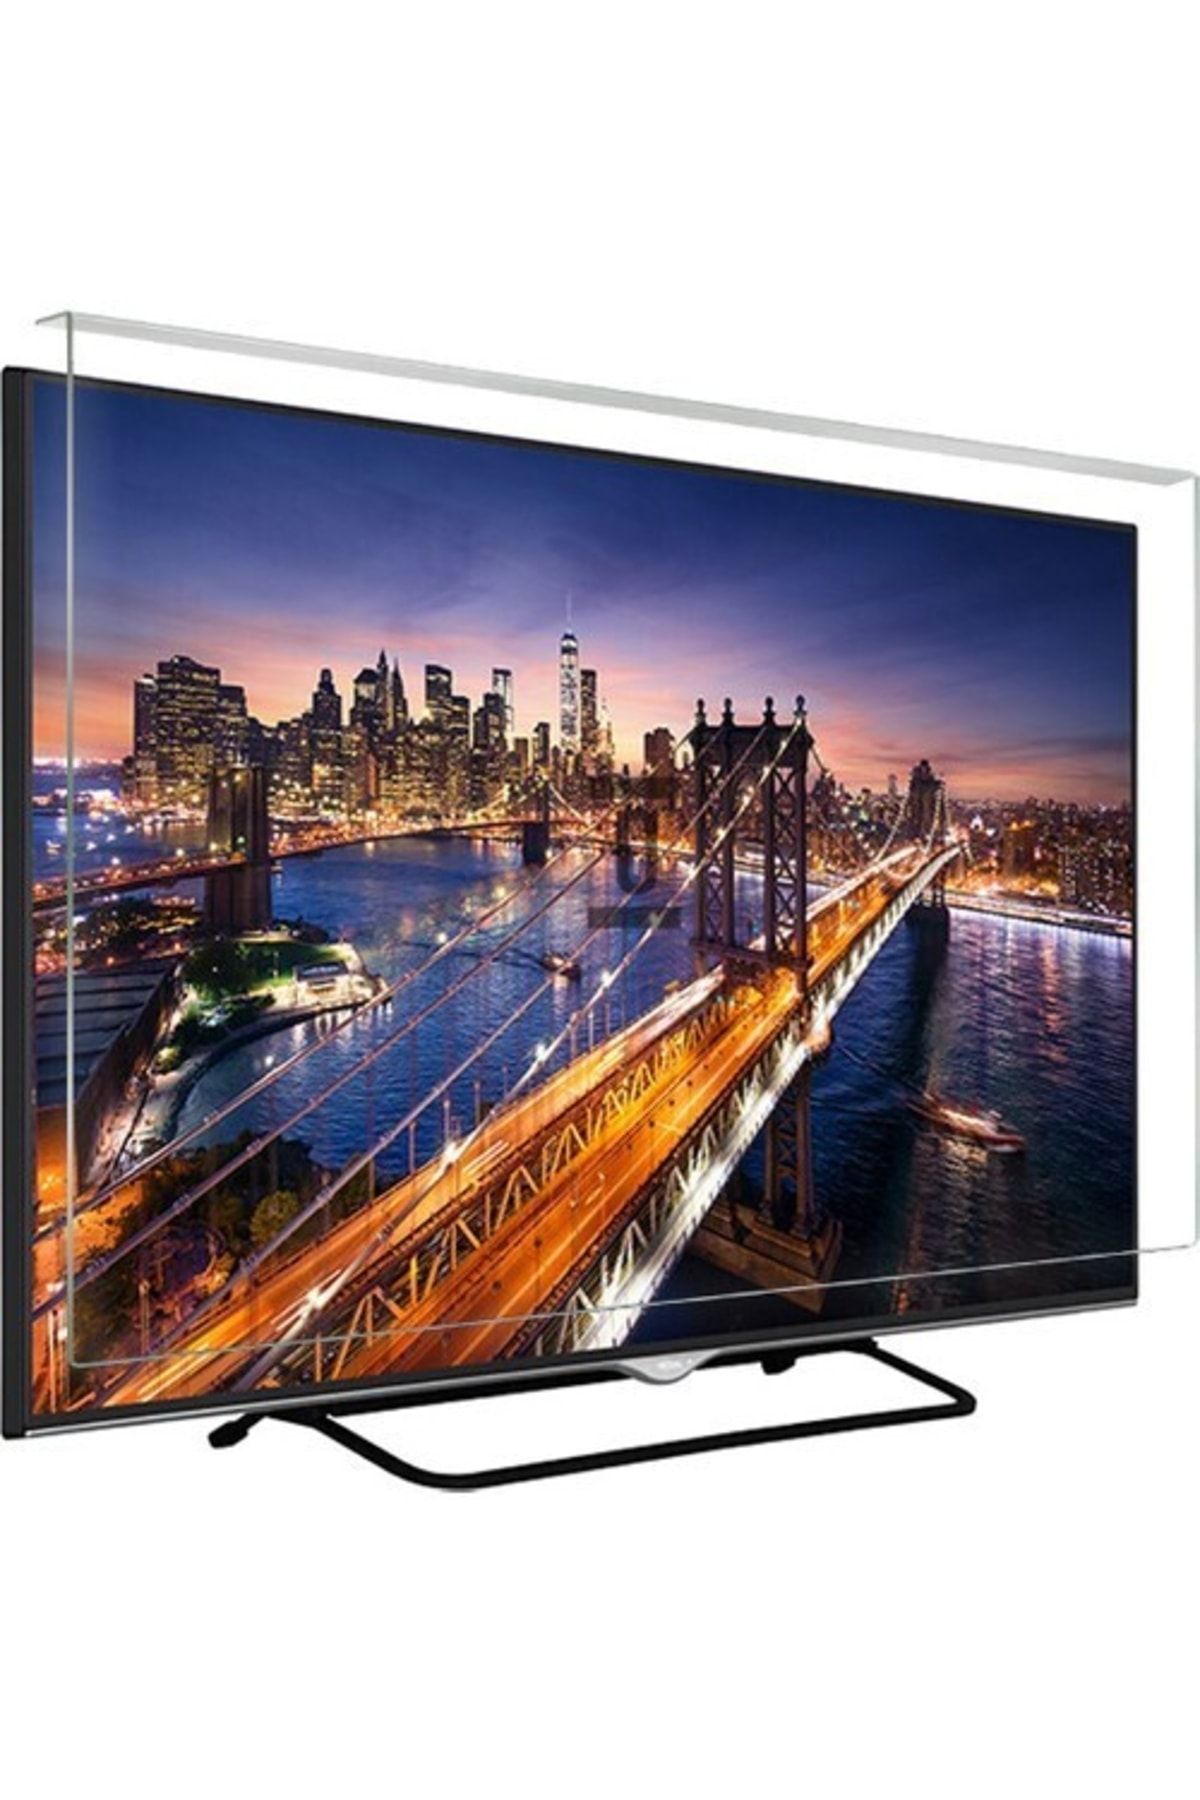 Sungate Asaf Online-evçelik Sg-3201 Tv Ekran Koruyucu Düz (flat) Ekran